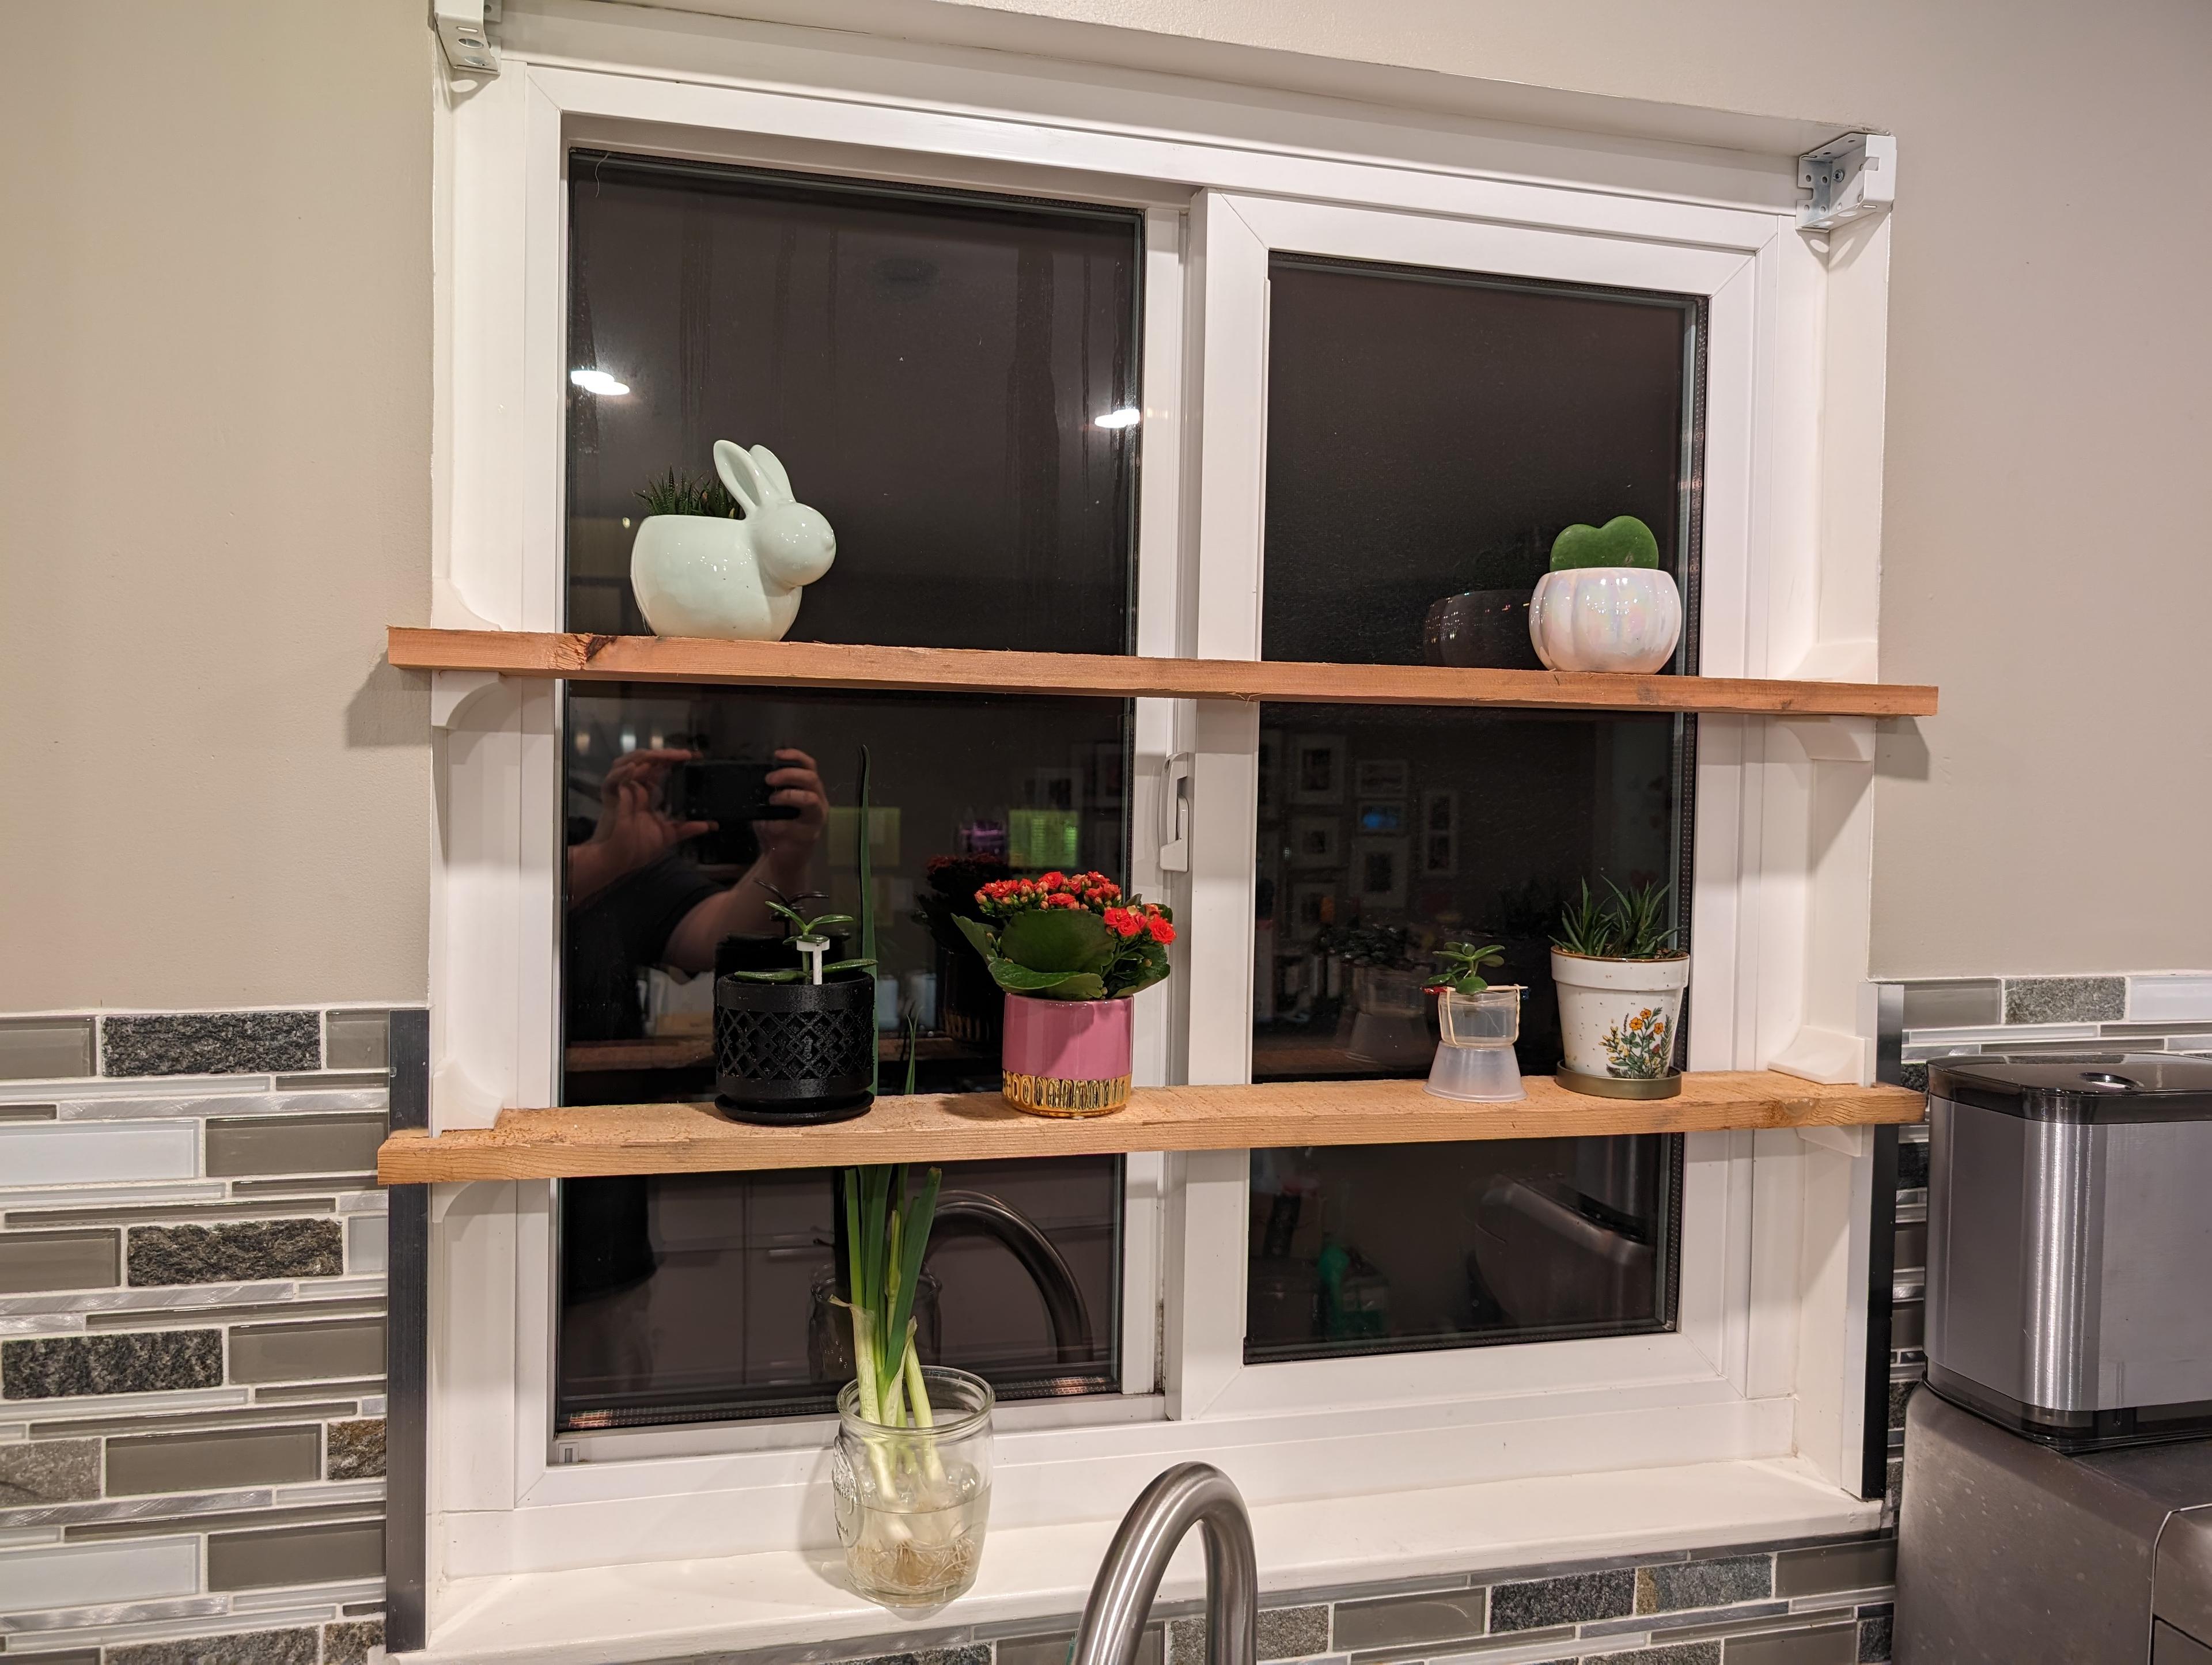 Window Bracket for a 1x4 fence board 3d model